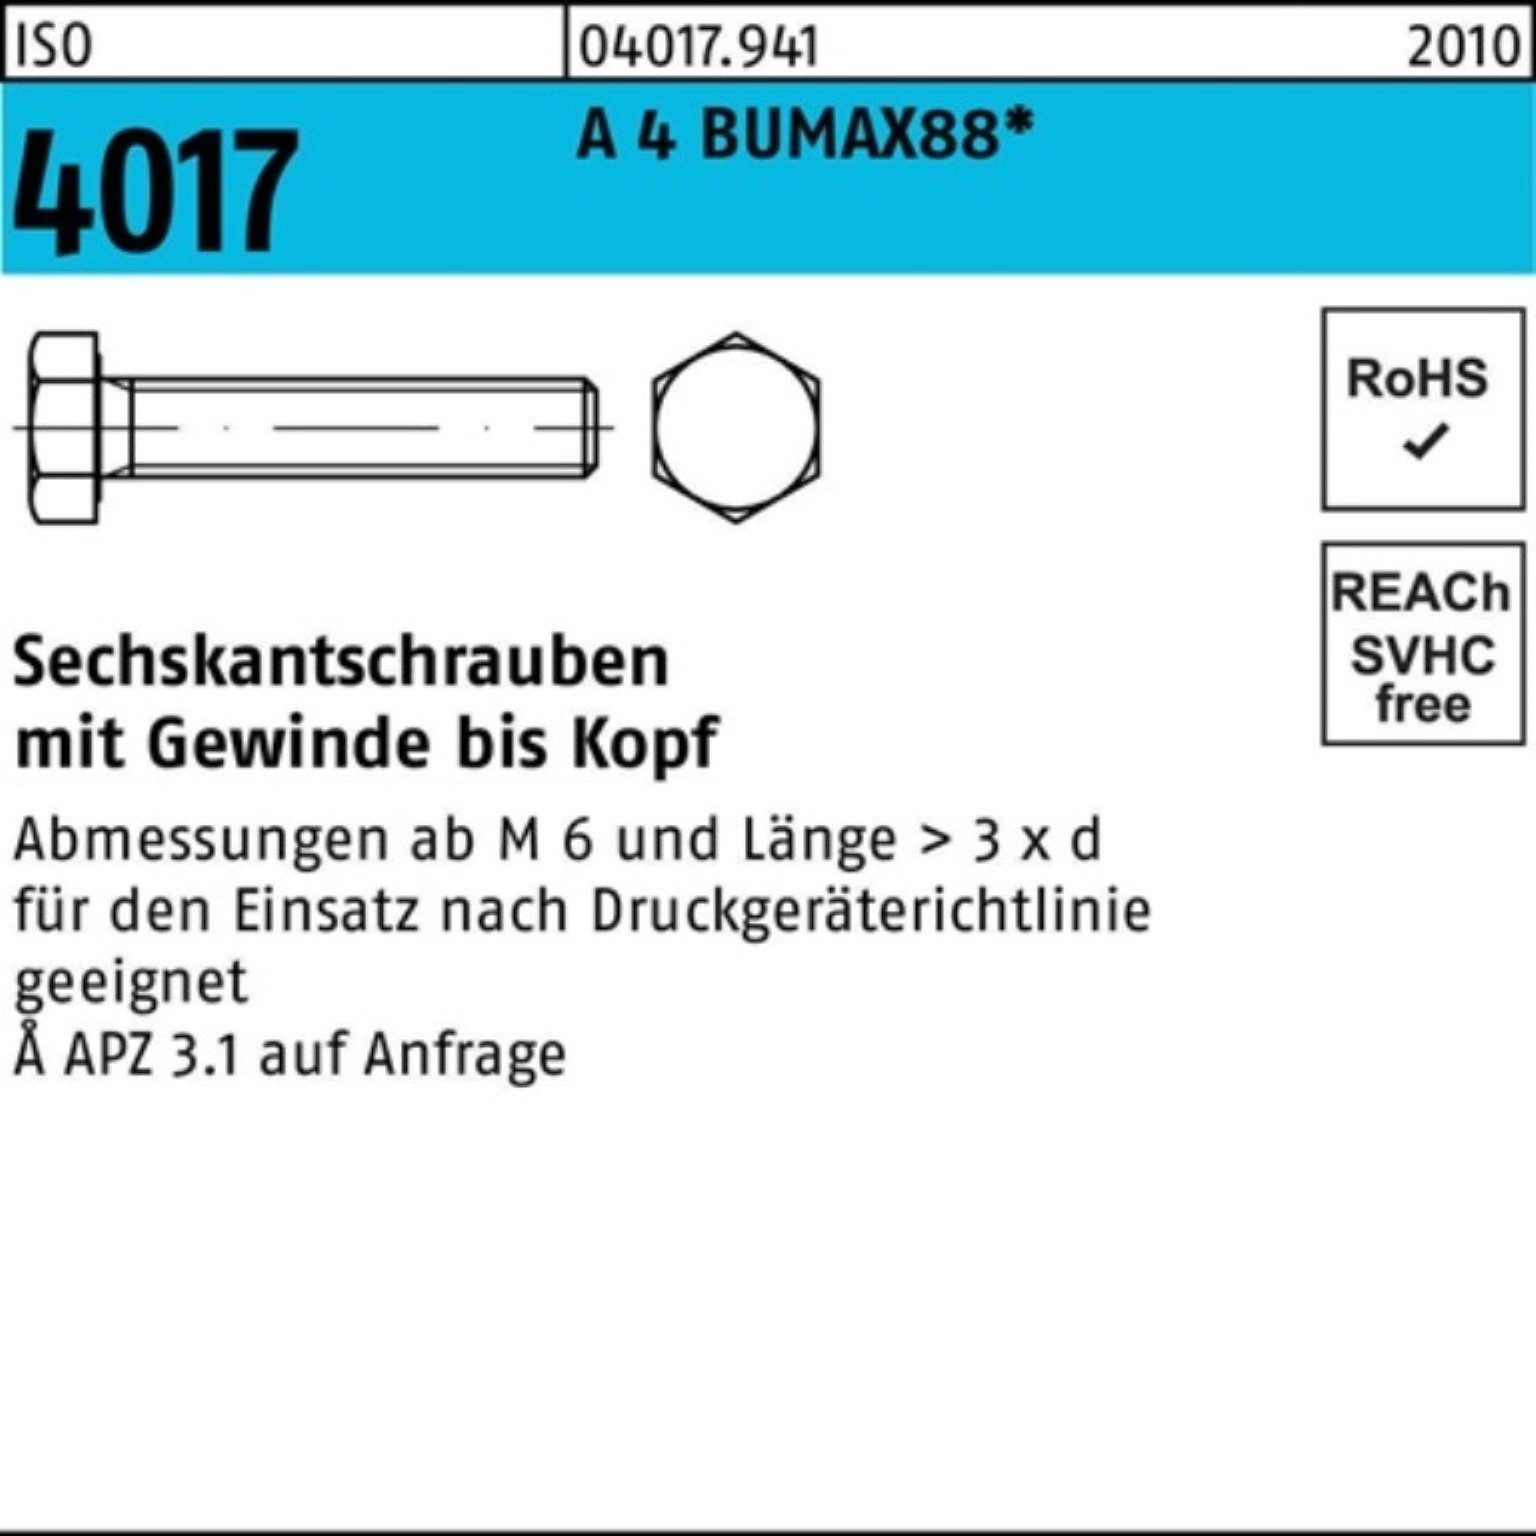 Bufab Sechskantschraube 100er Pack Sechskantschraube ISO 4017 VG M20x 60 A 4 BUMAX88 10 Stück